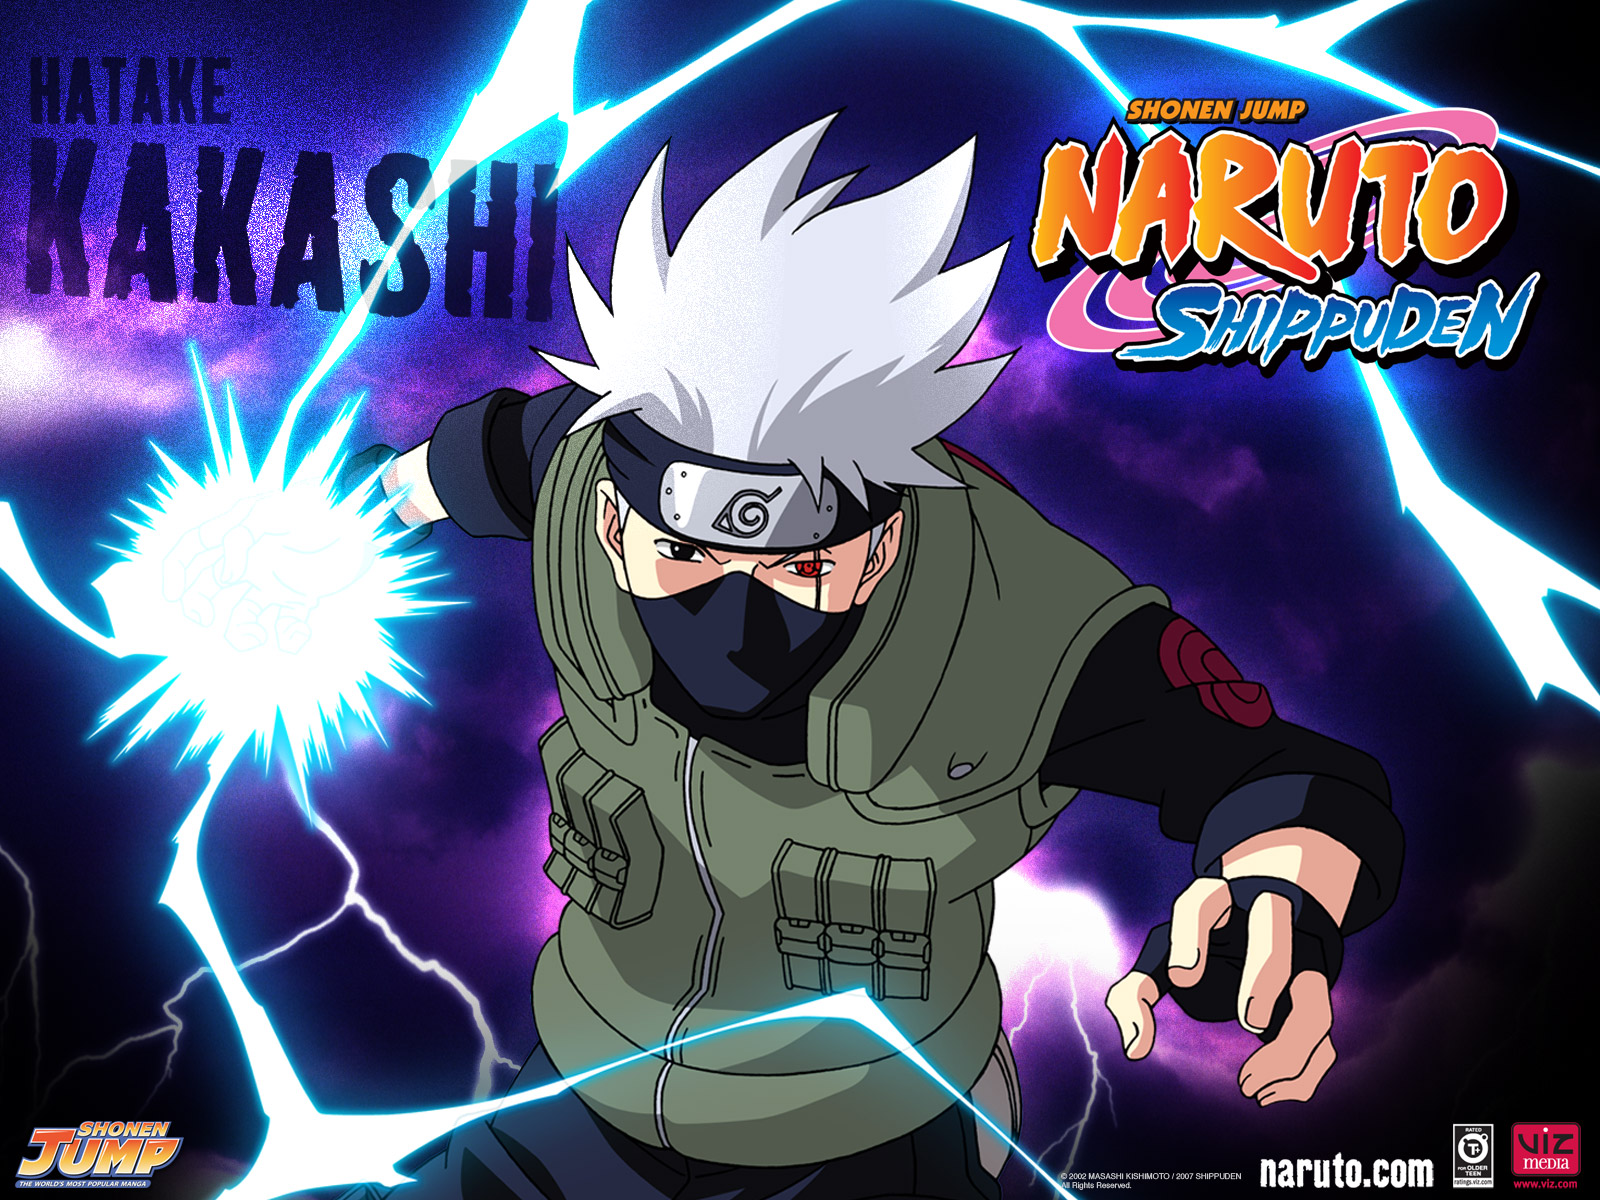 Imagenes de Naruto y Naruto Shippuden [HD] - Taringa!